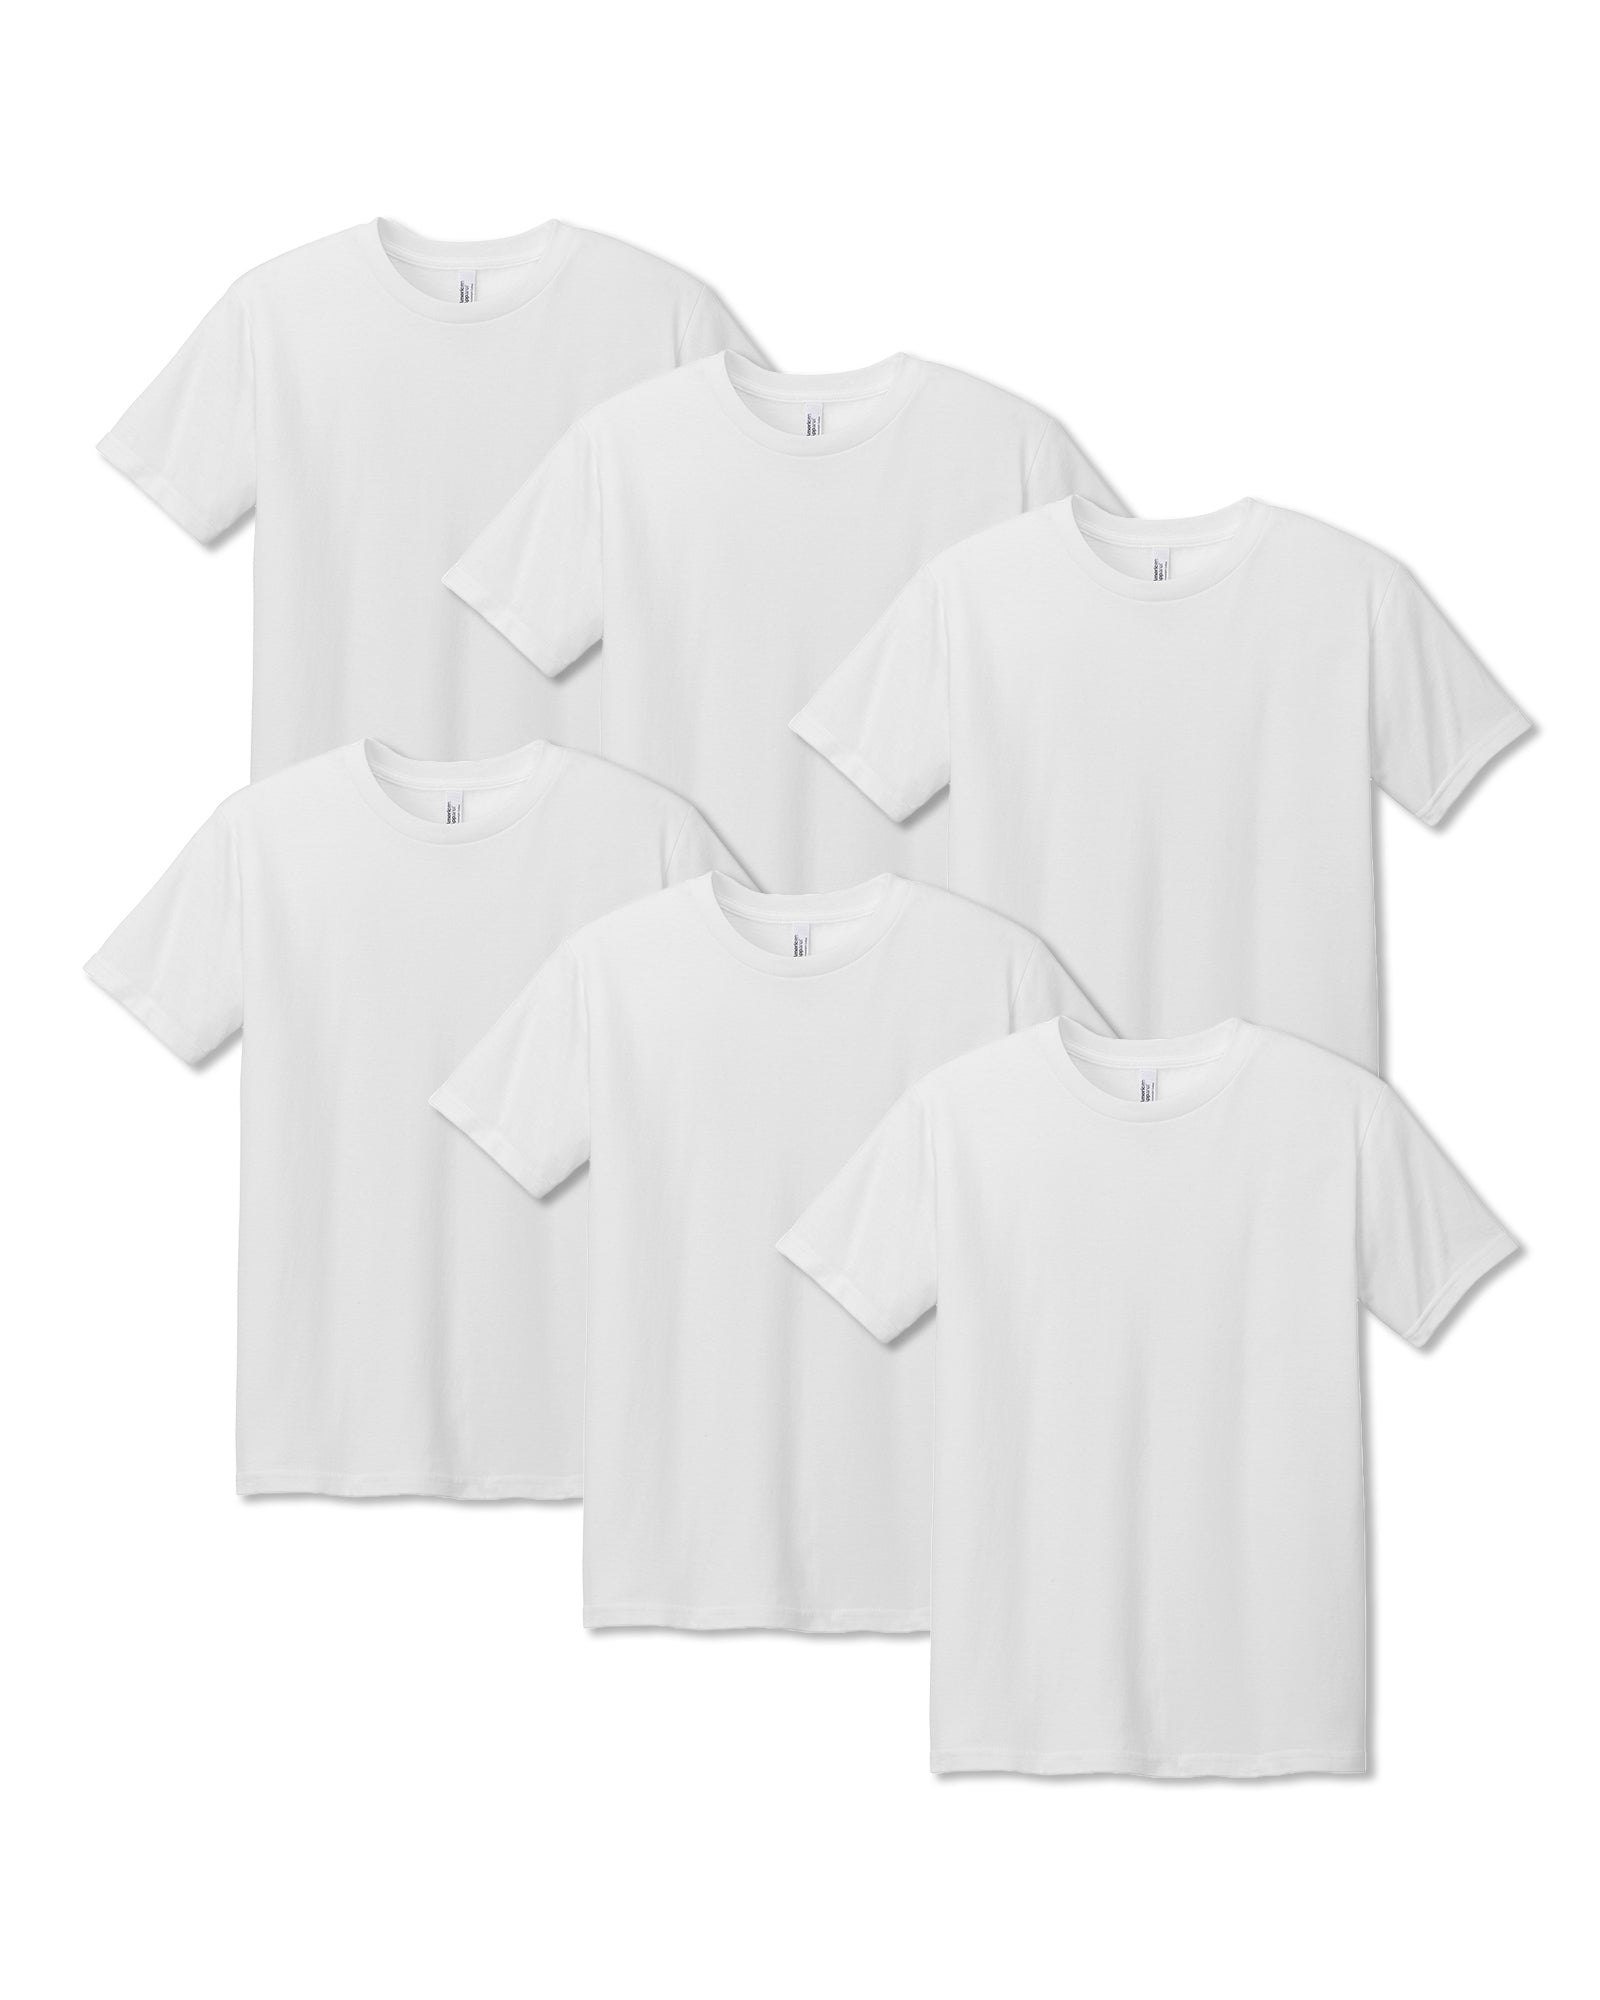 Pack of 6 Heavyweight Unisex T-Shirt - White